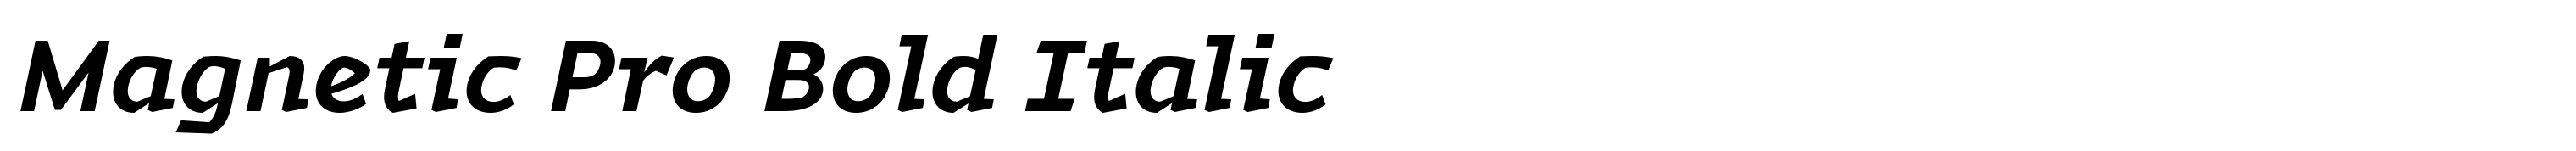 Magnetic Pro Bold Italic